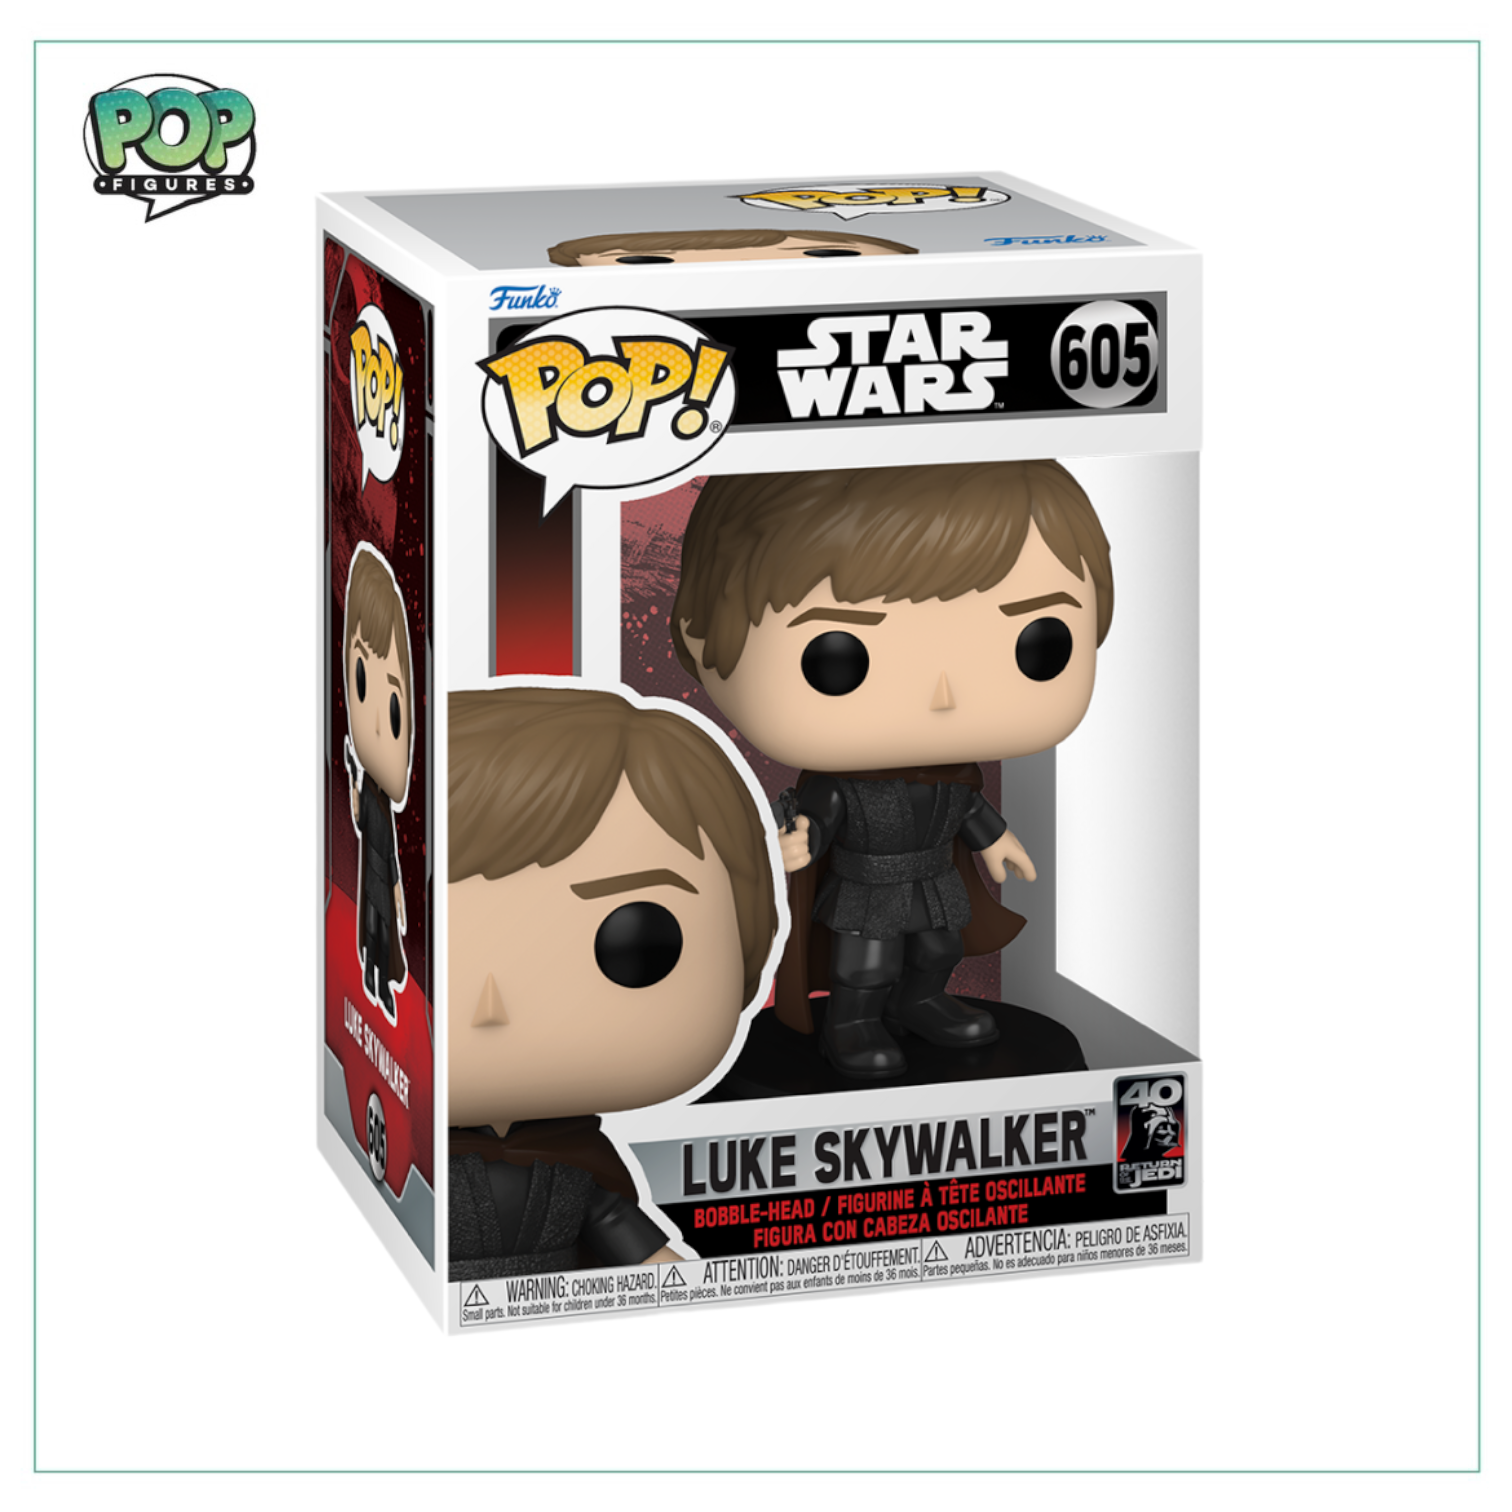 Luke Skywalker #605 Funko Pop! Star Wars - Return of the Jedi 40th